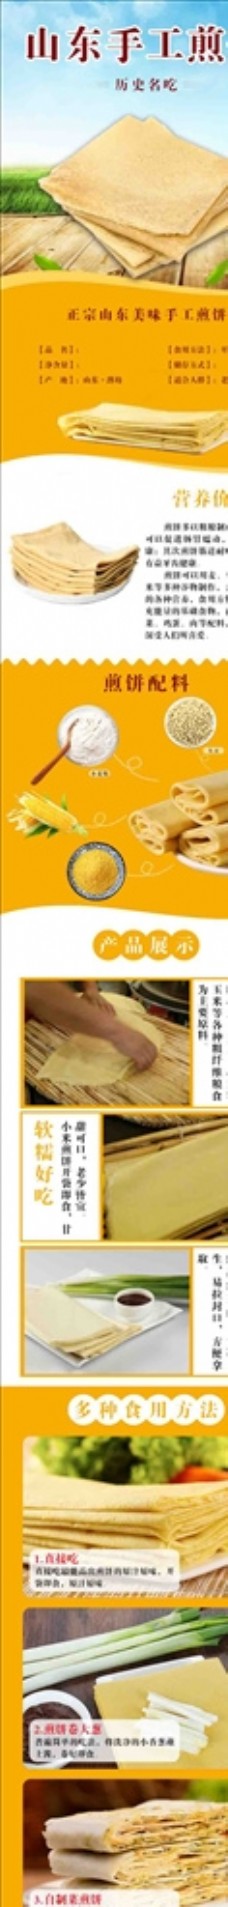 煎饼食品农产品淘宝详情页展示